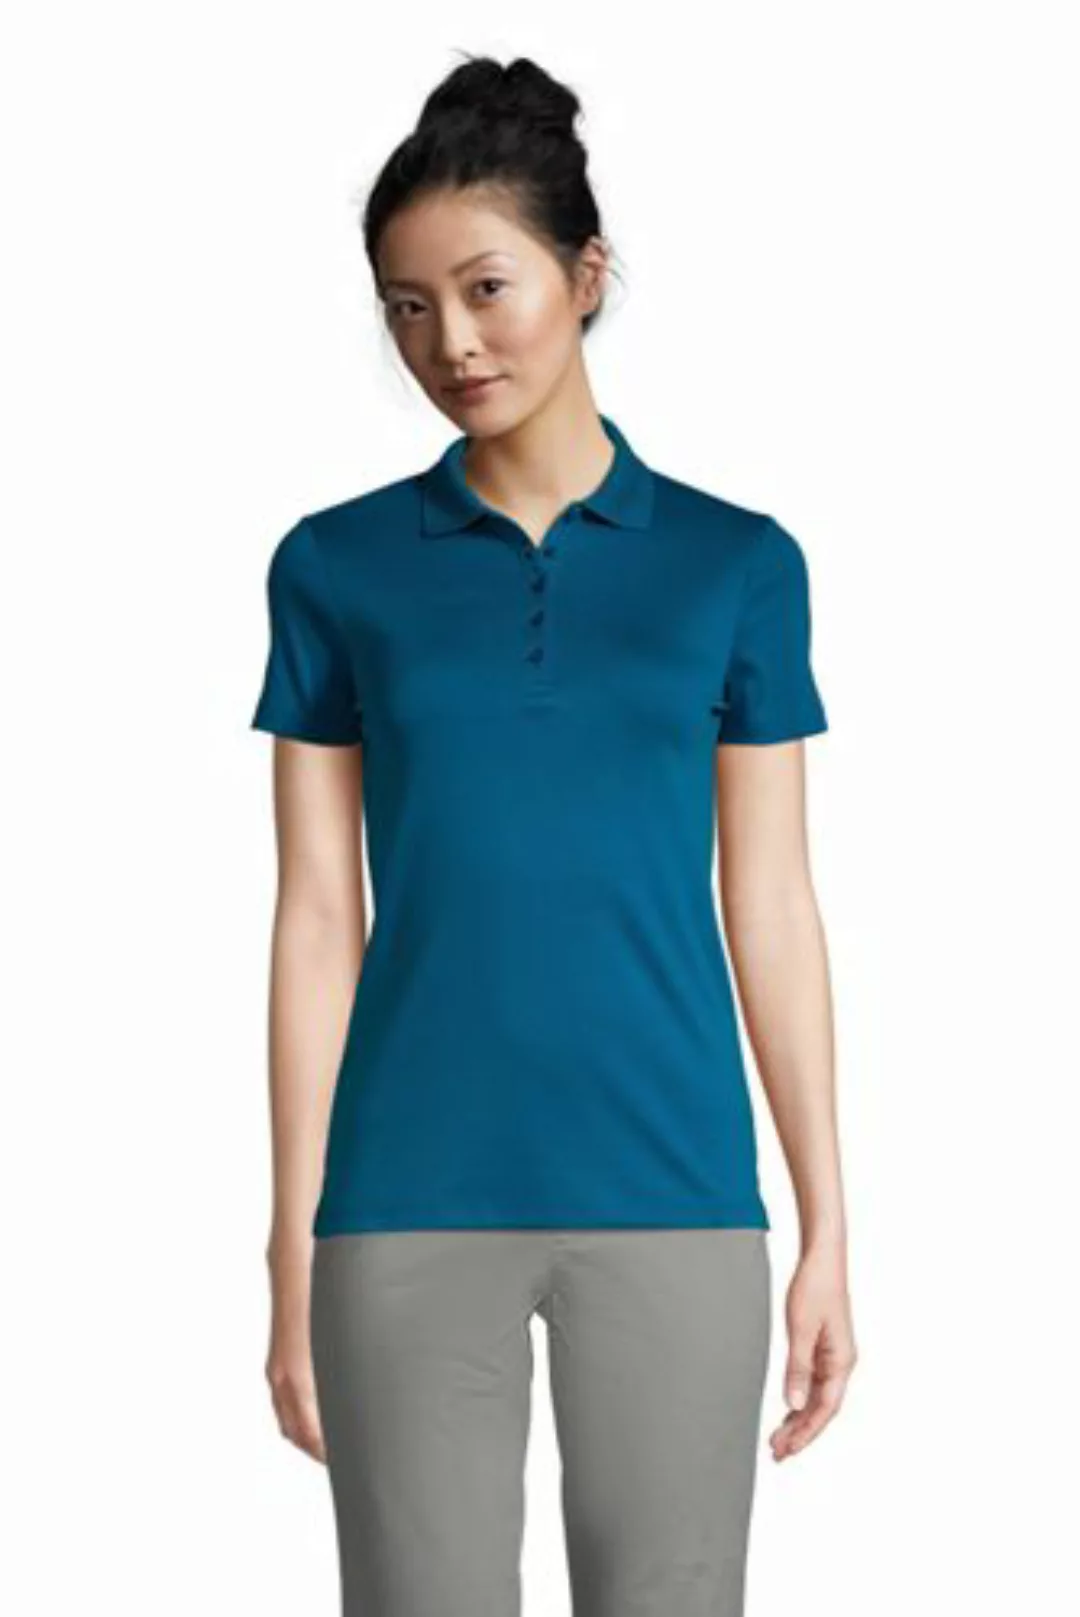 Supima-Poloshirt in Petite-Größe, Damen, Größe: M Petite, Blau, Baumwolle, günstig online kaufen